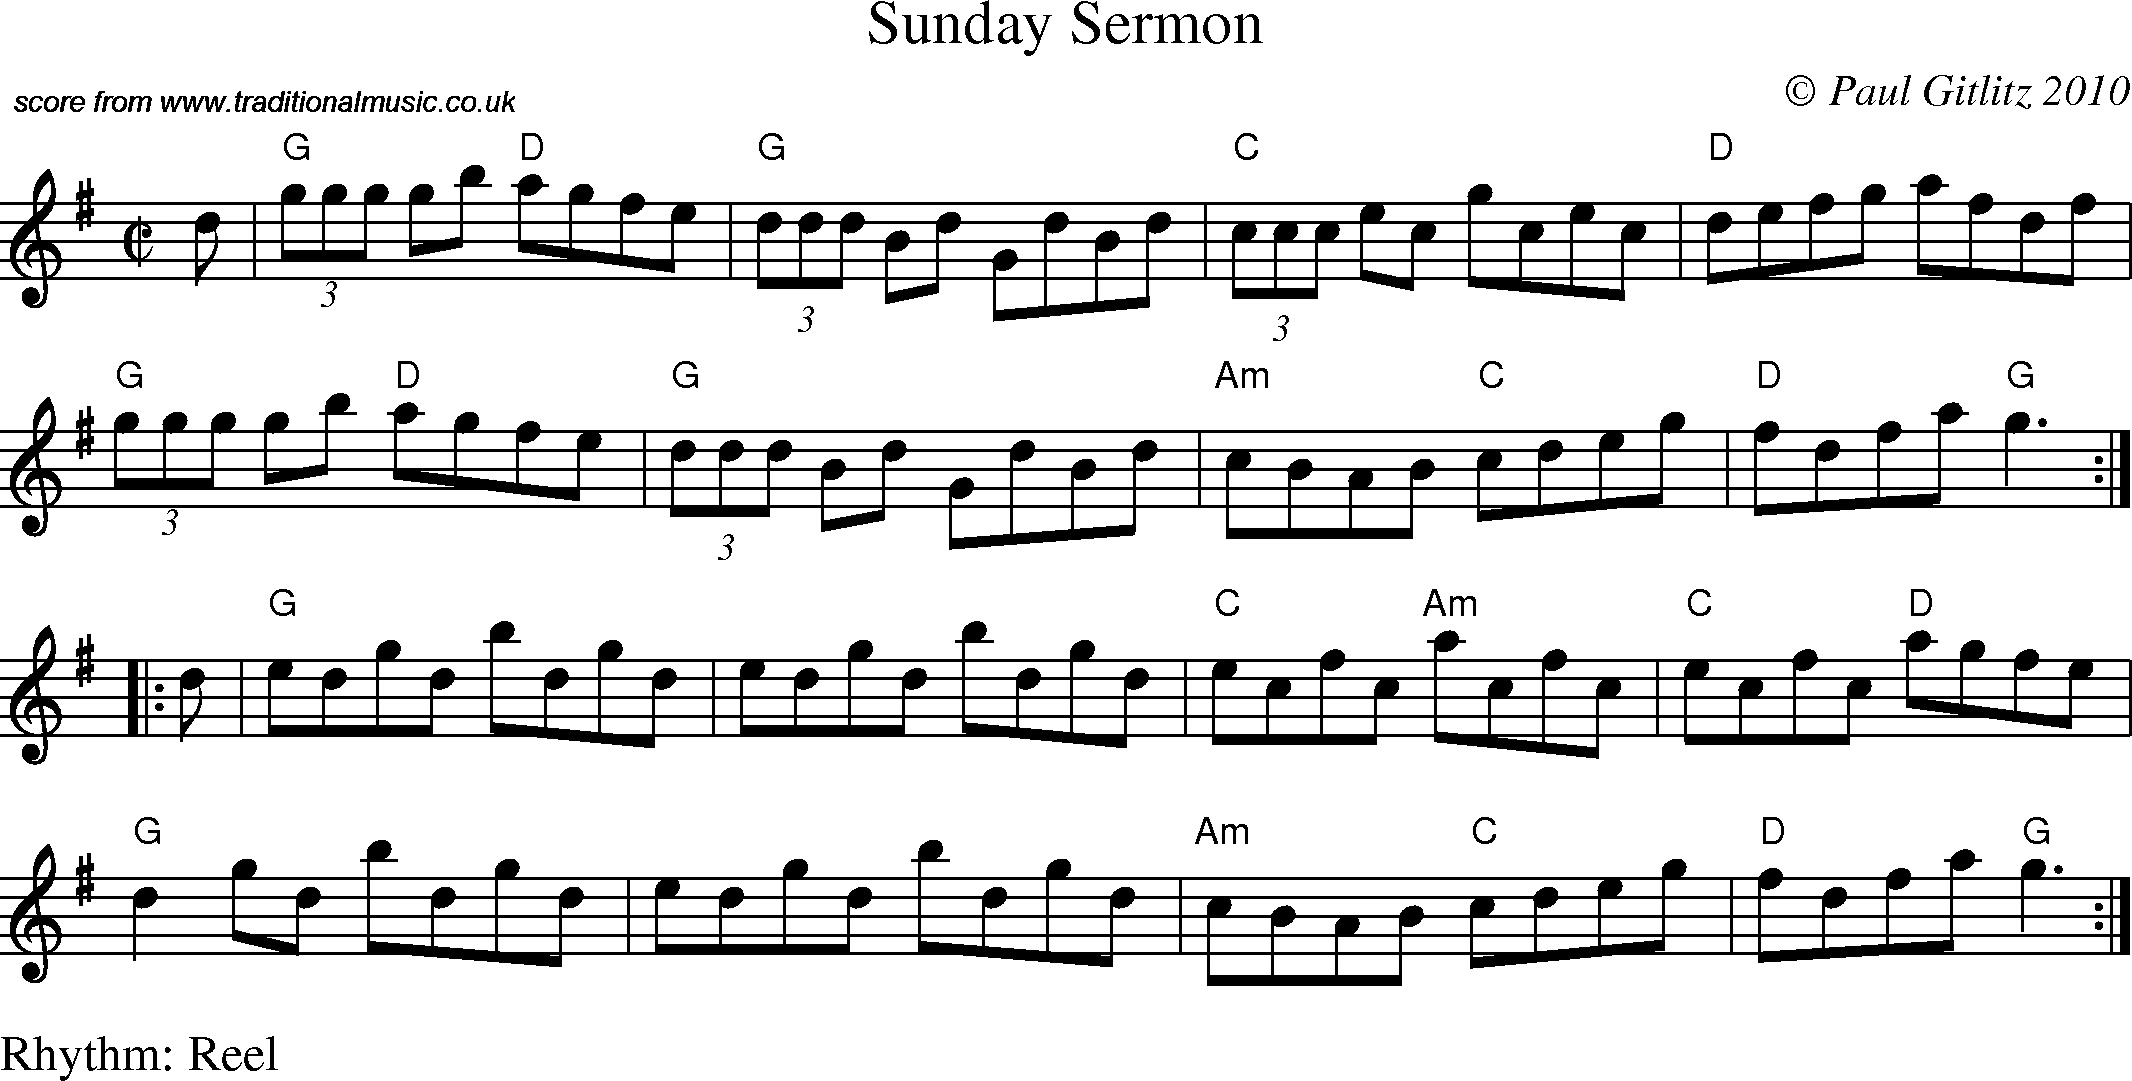 Sheet Music Score for Reel - Sunday Sermon